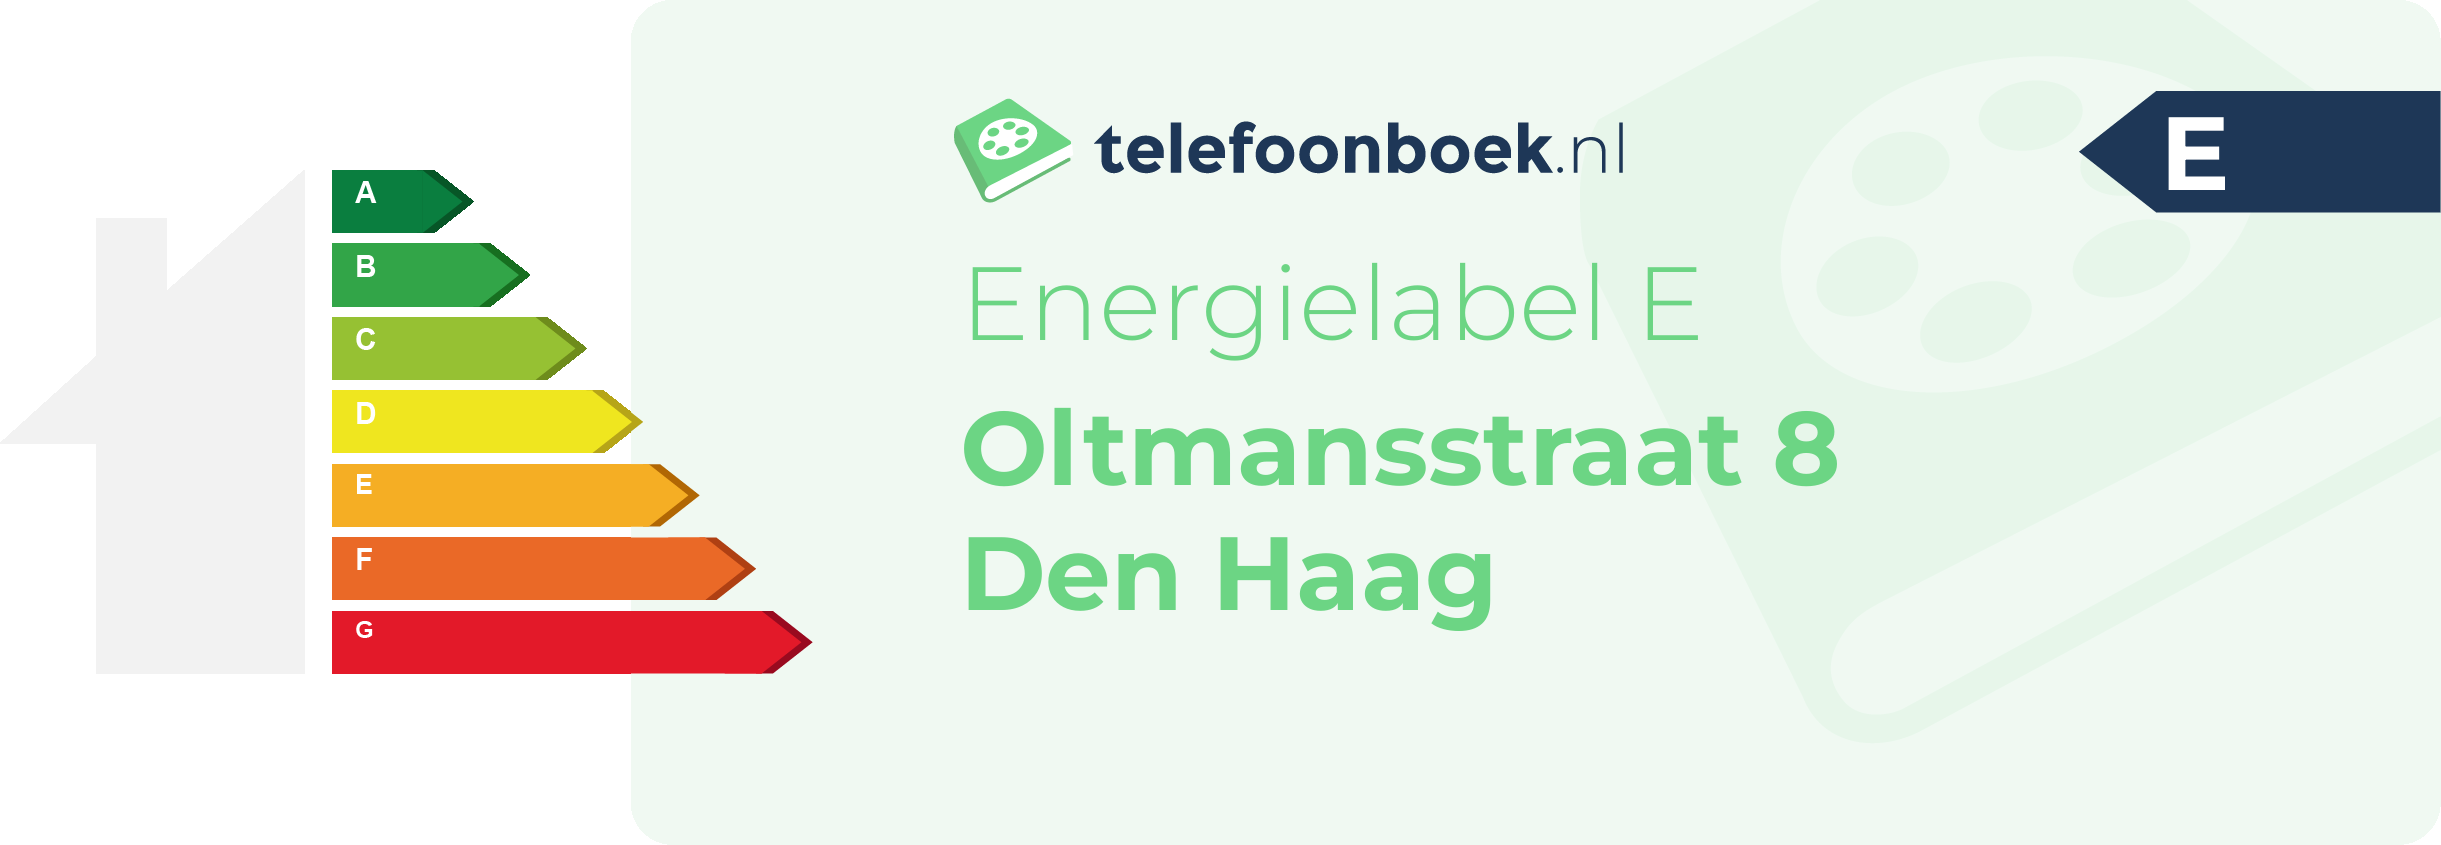 Energielabel Oltmansstraat 8 Den Haag